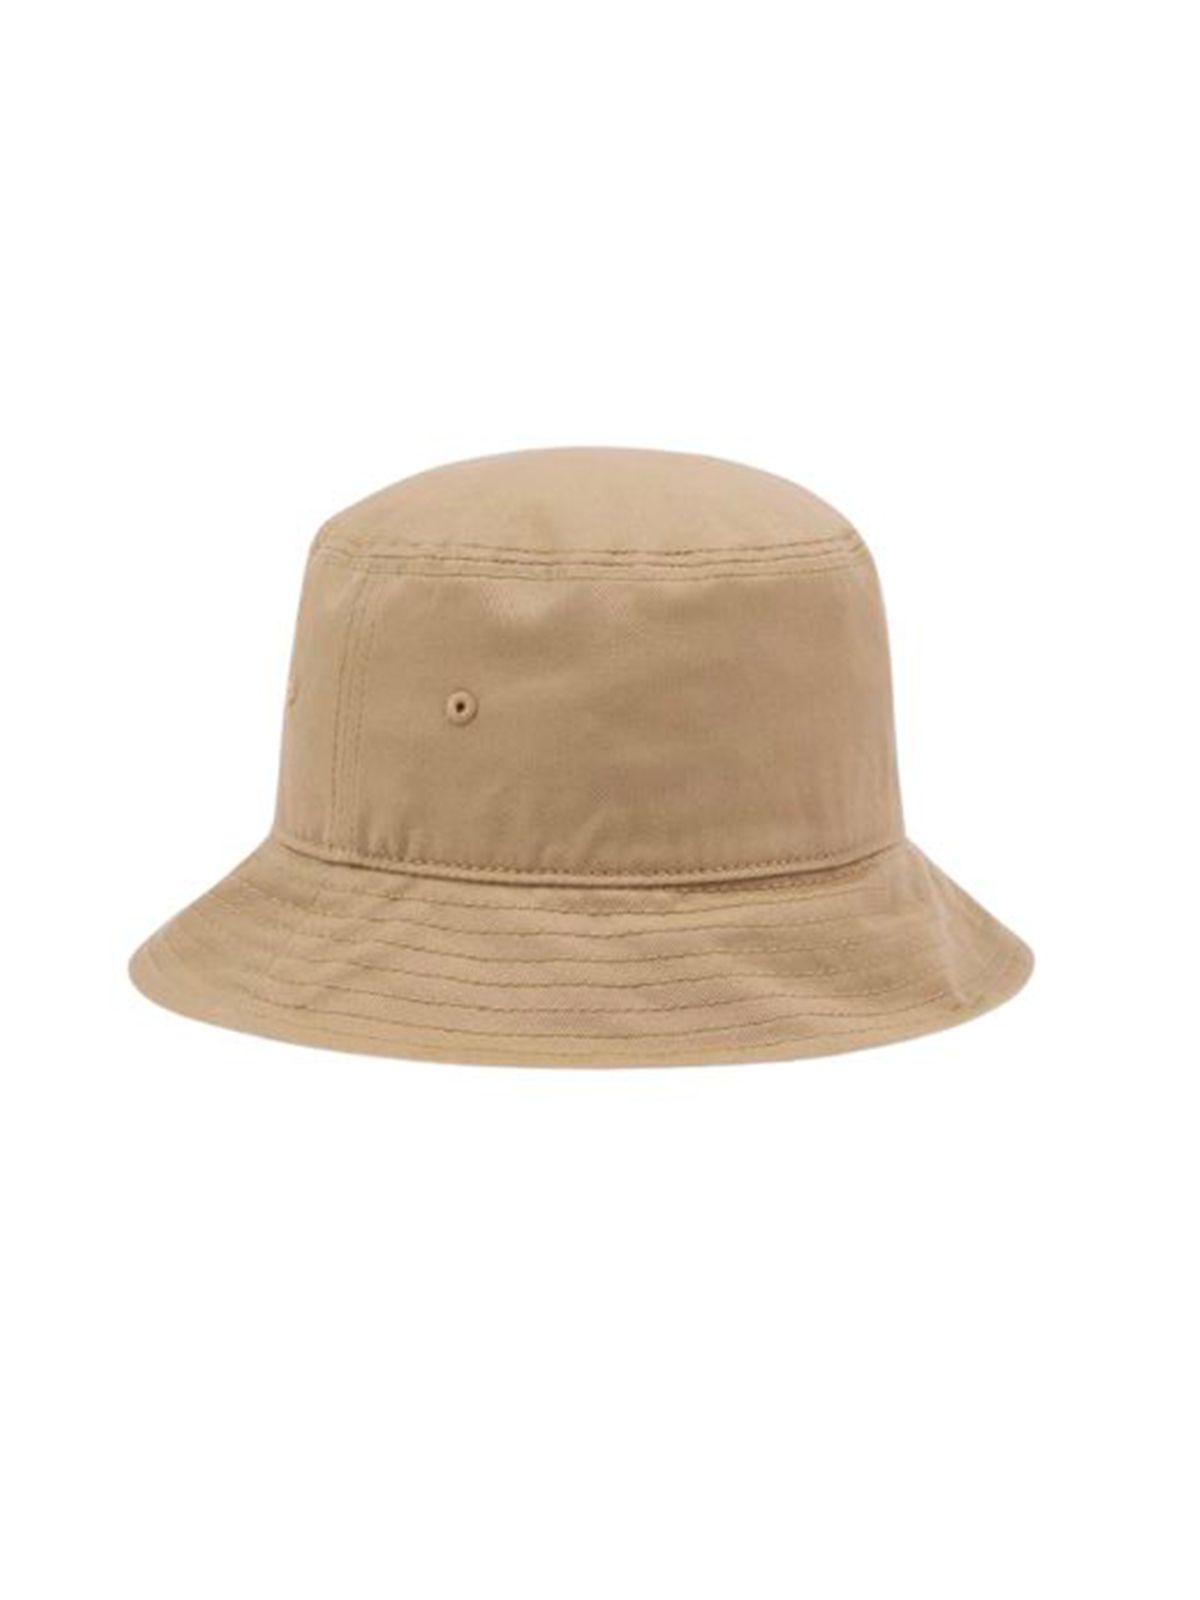 Shop Dickies Men's Bucket Hats: Clarks Grove